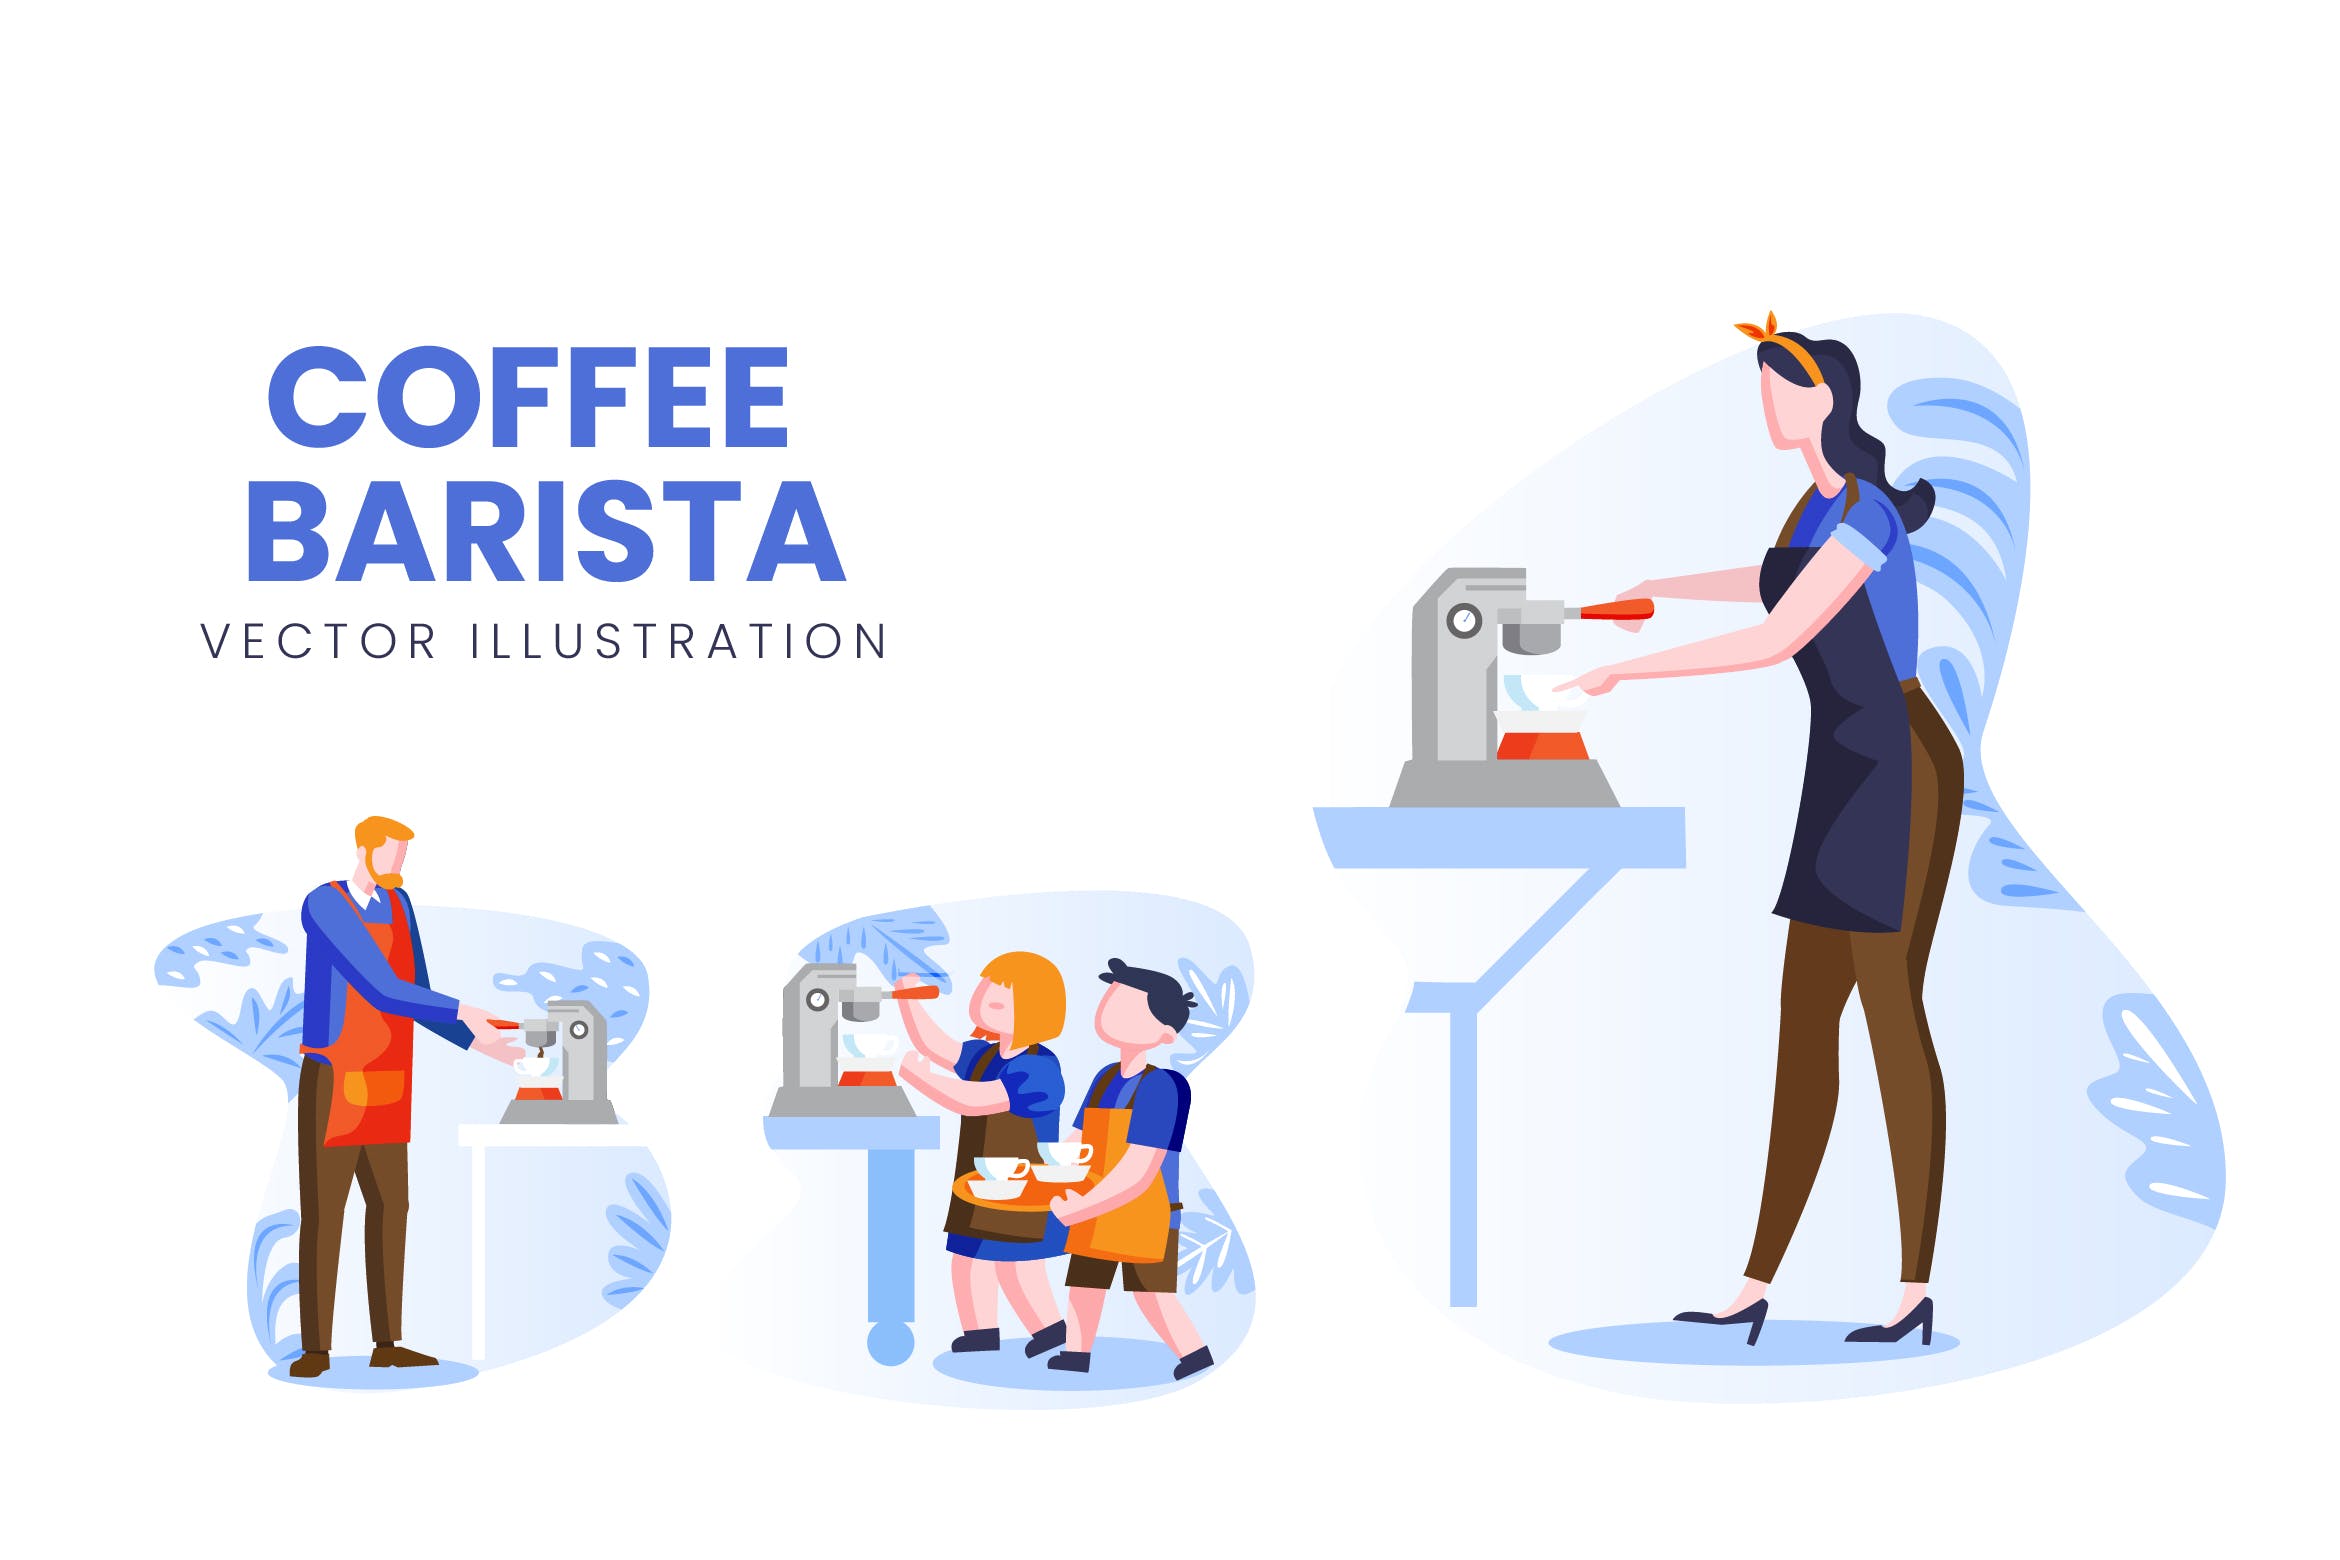 咖啡师人物形象16图库精选手绘插画矢量素材 Coffee Barista Vector Character Set插图